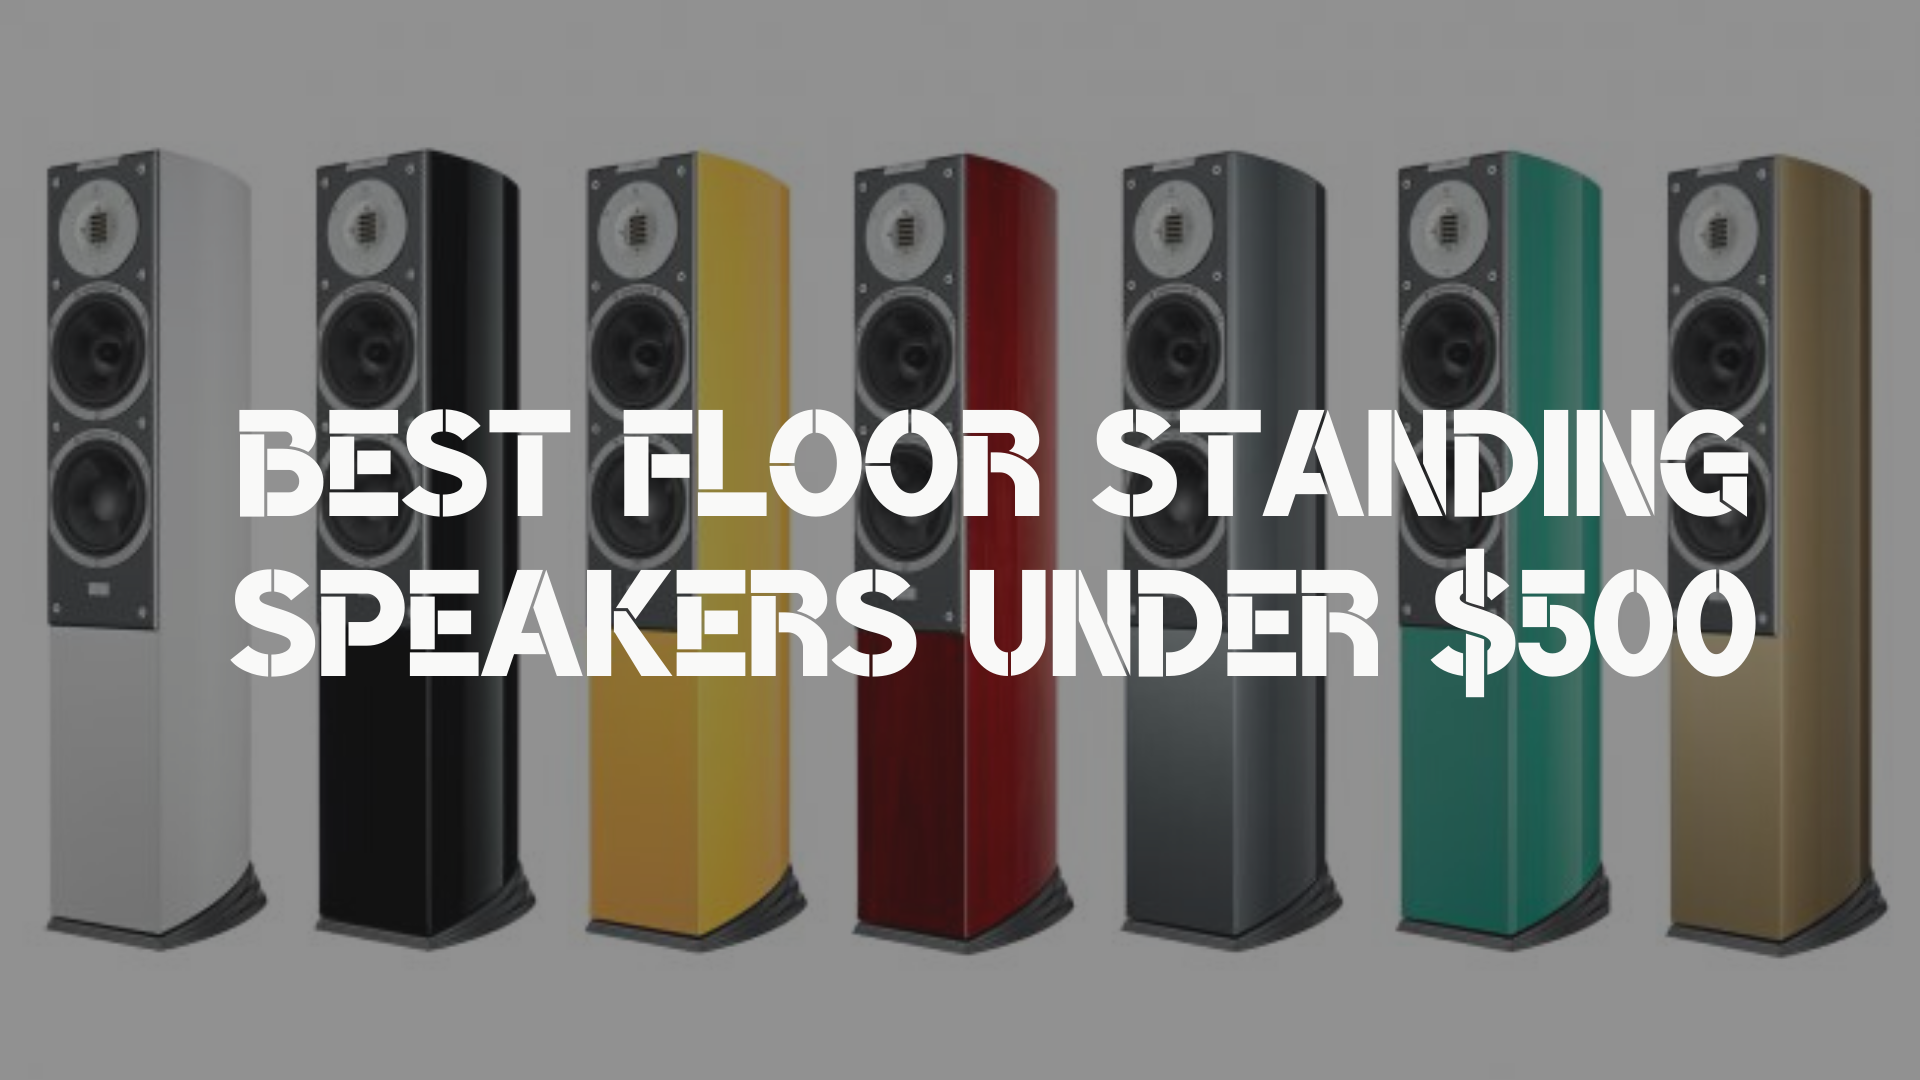 Best Floor Standing Speakers under $500